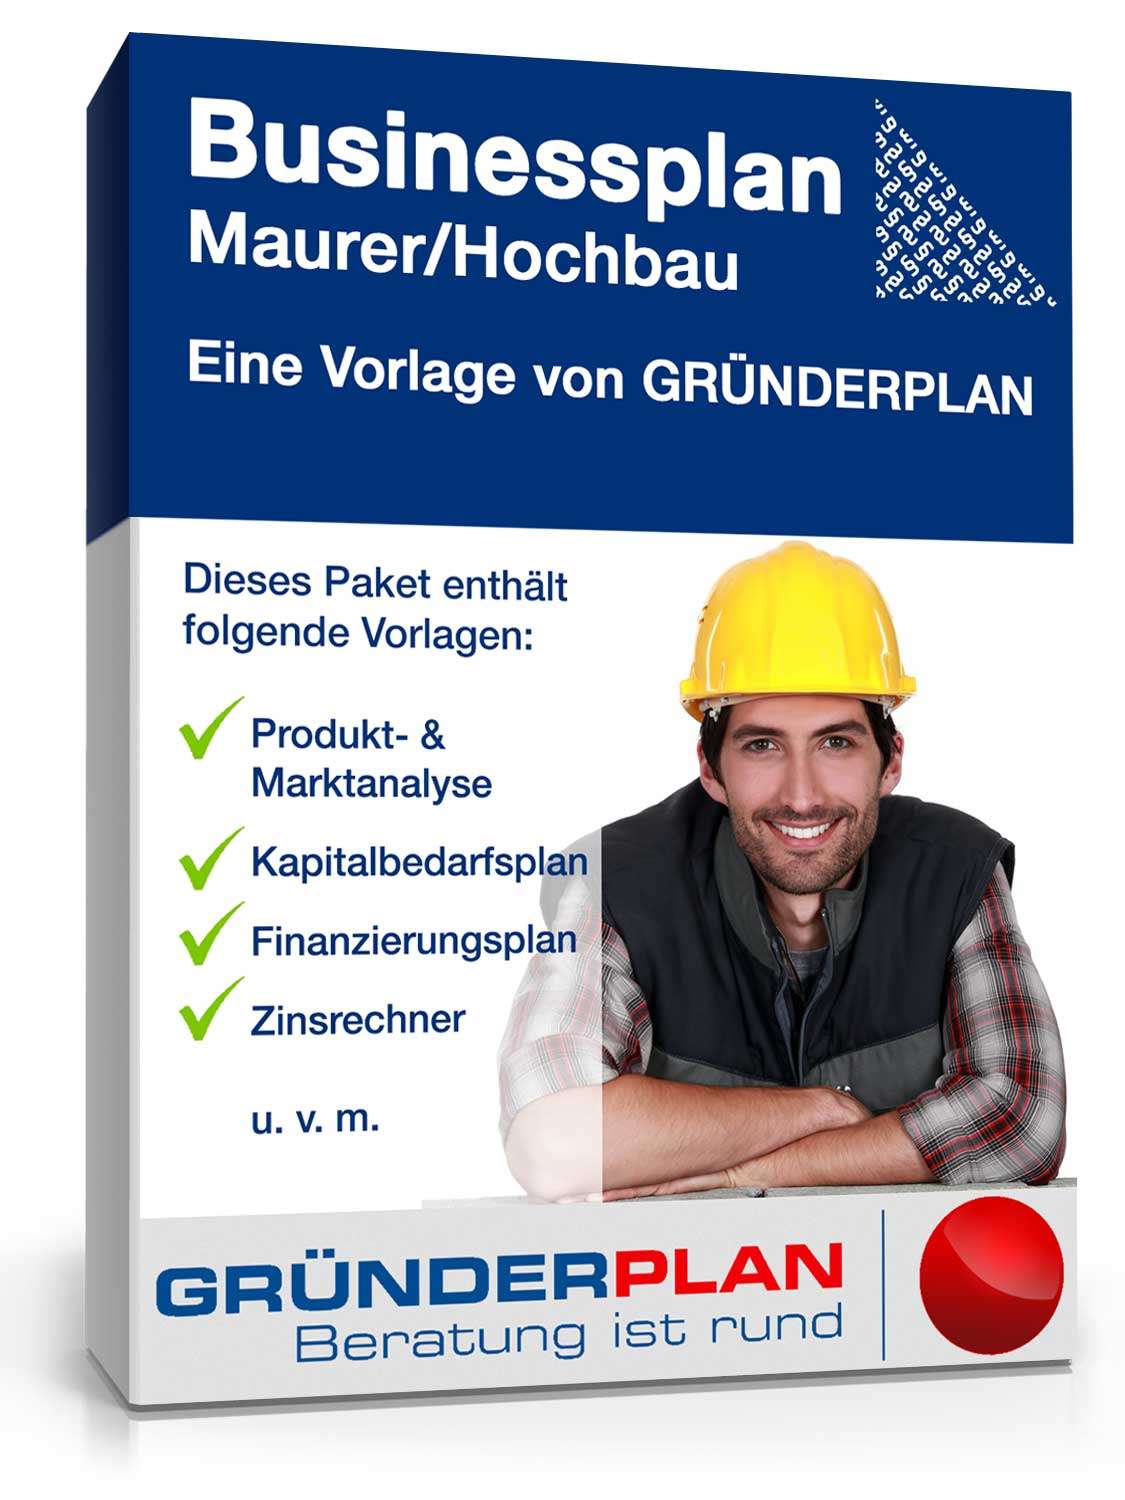 Hauptbild des Produkts: Businessplan Maurer/Hochbau von Gründerplan